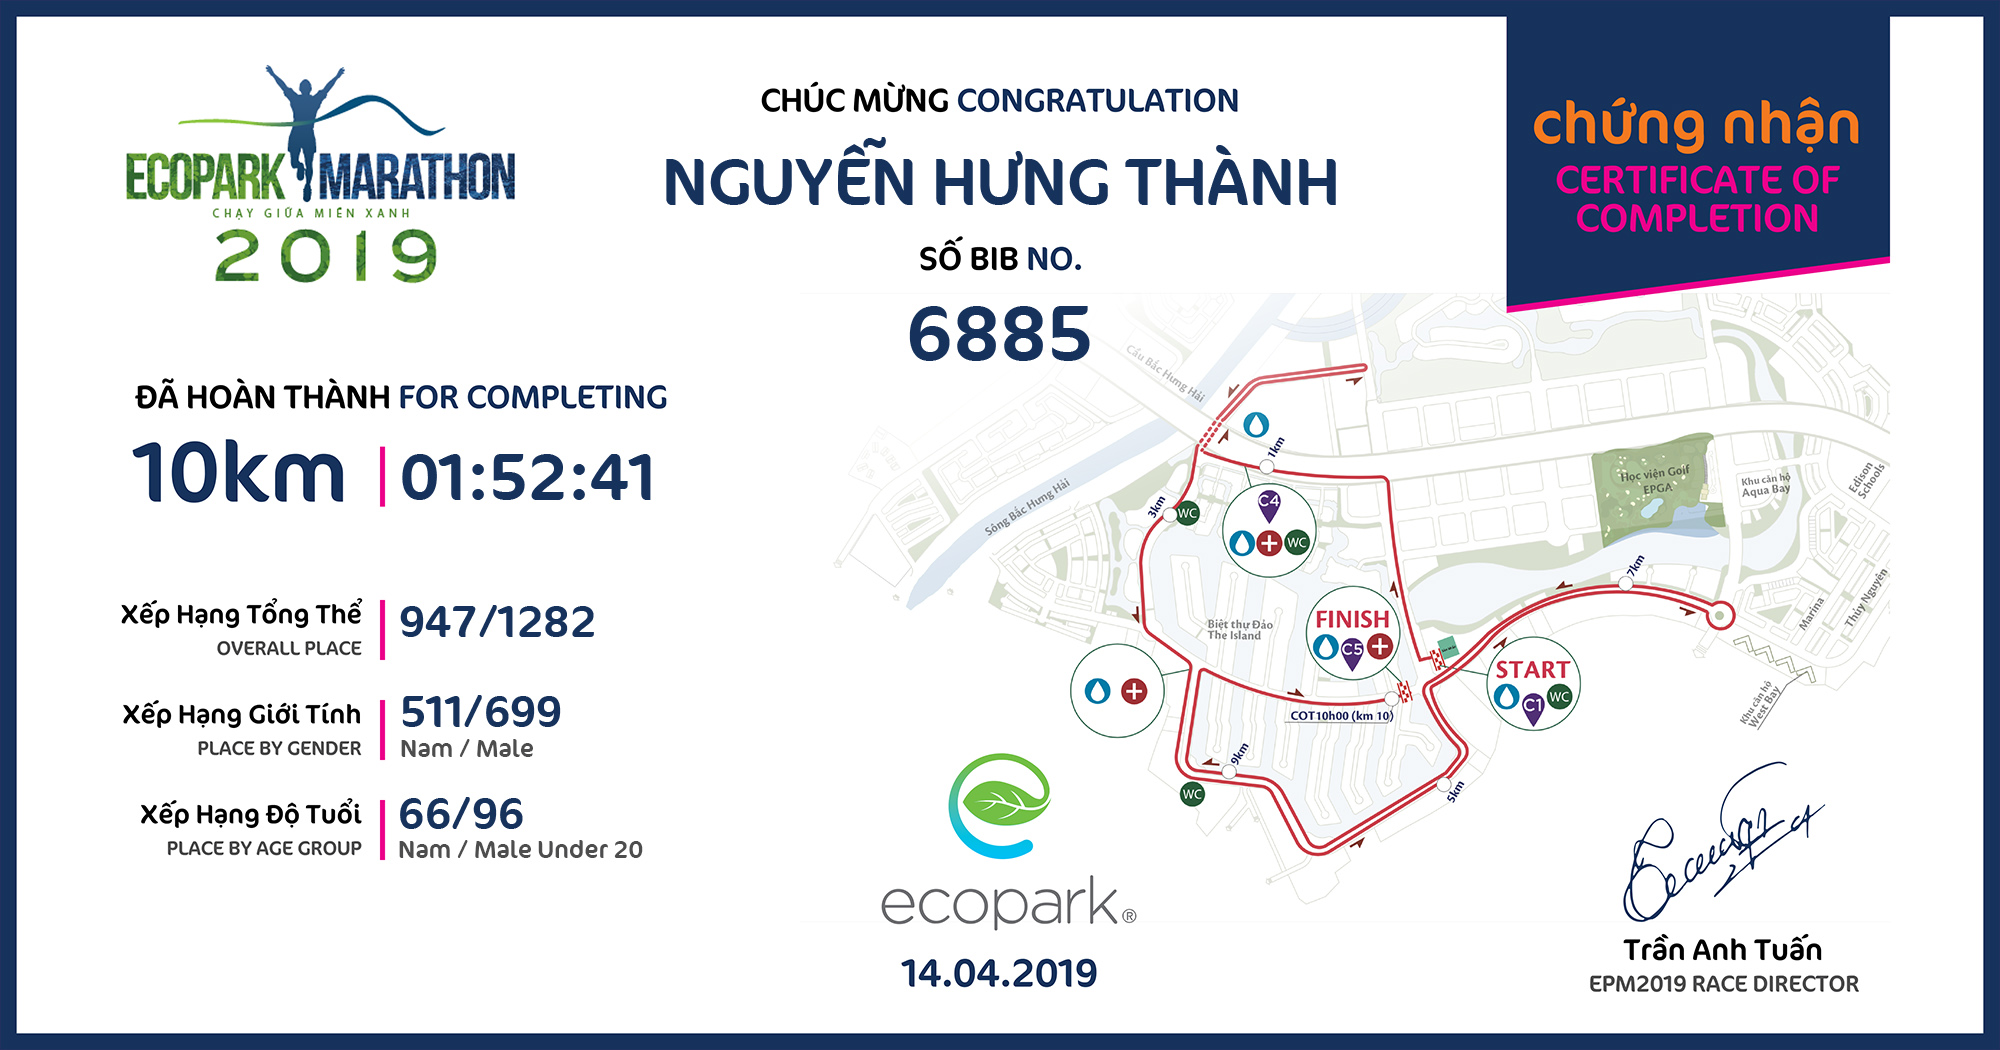 6885 - Nguyễn Hưng Thành